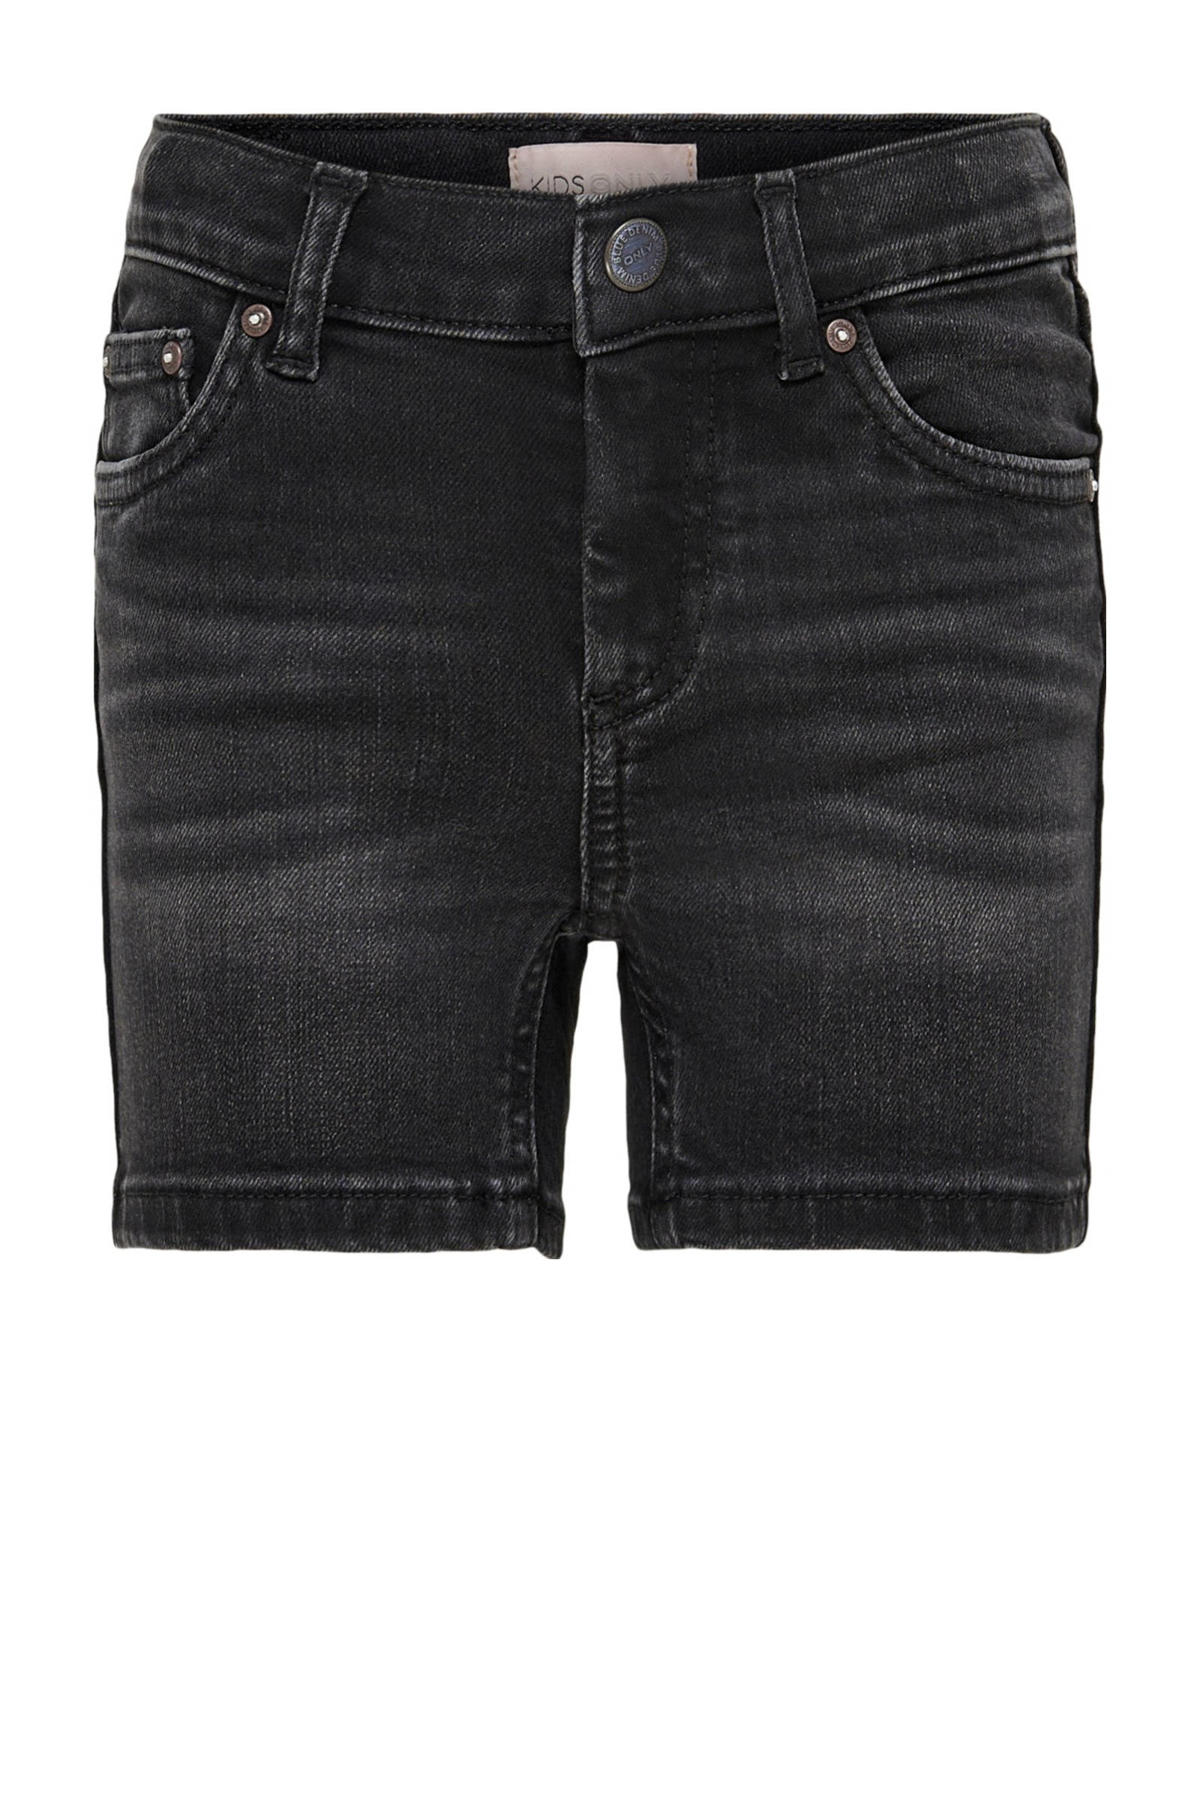 short | KONBLUSH KIDS fit GIRL wehkamp denim regular ONLY black jeans